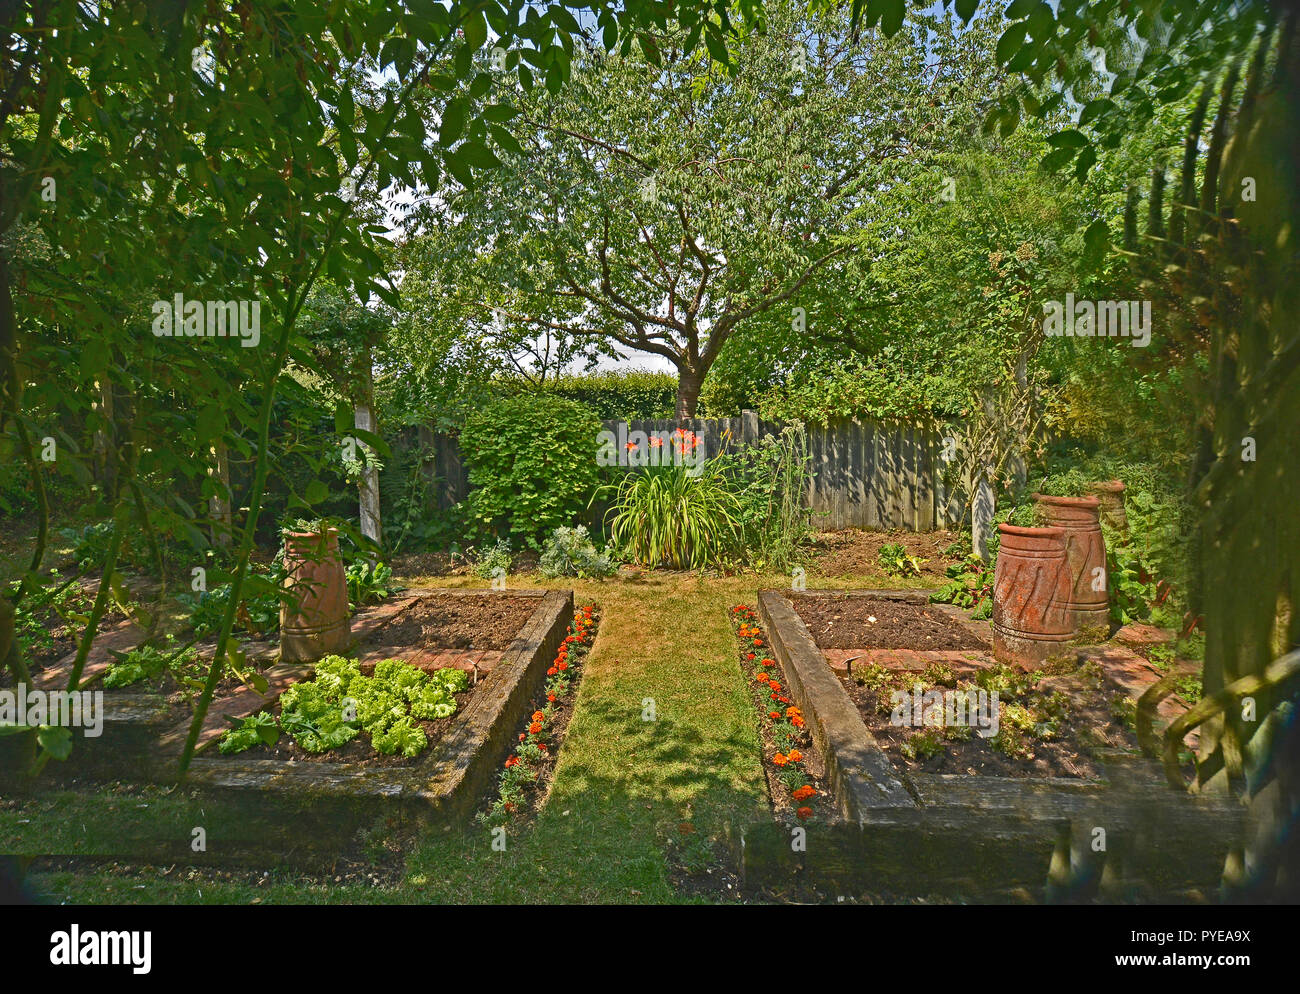 Potager dans un jardin privé. Août 2018. OAKHAM, Rutland, Angleterre. Les petits potagers clos planté avec des lits surélevés Banque D'Images